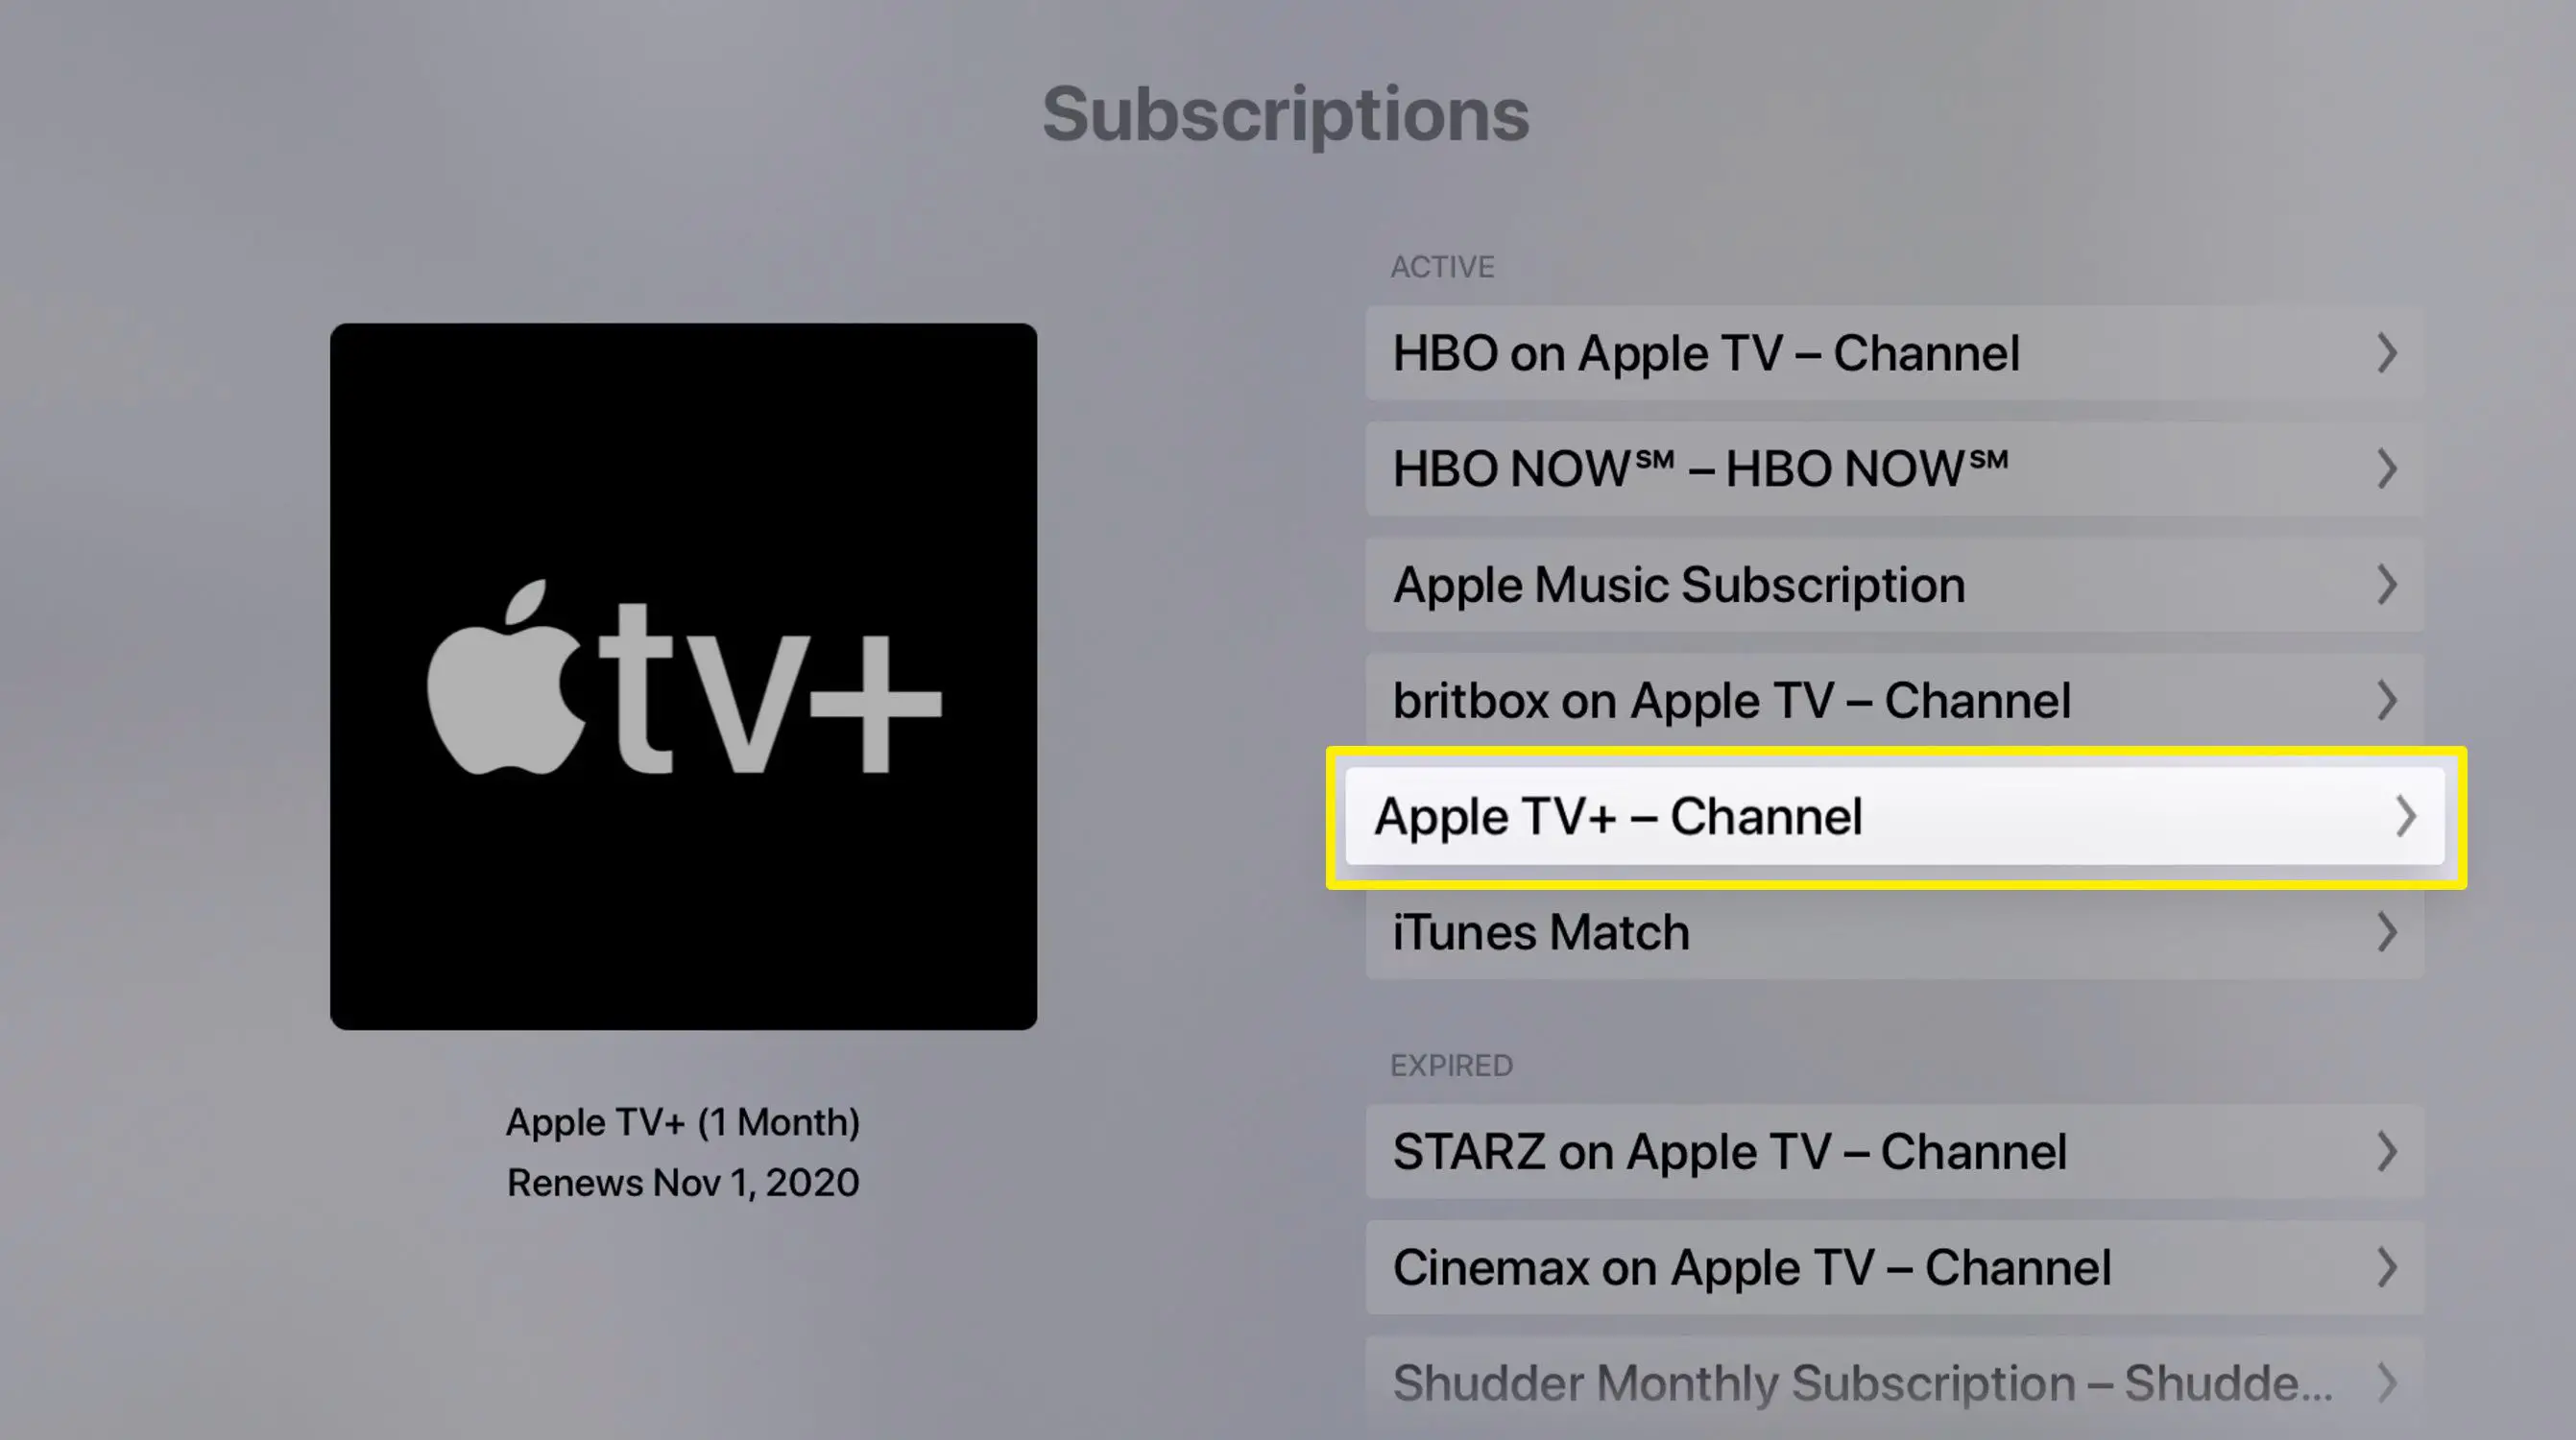 Captura de tela da lista de assinaturas da Apple TV